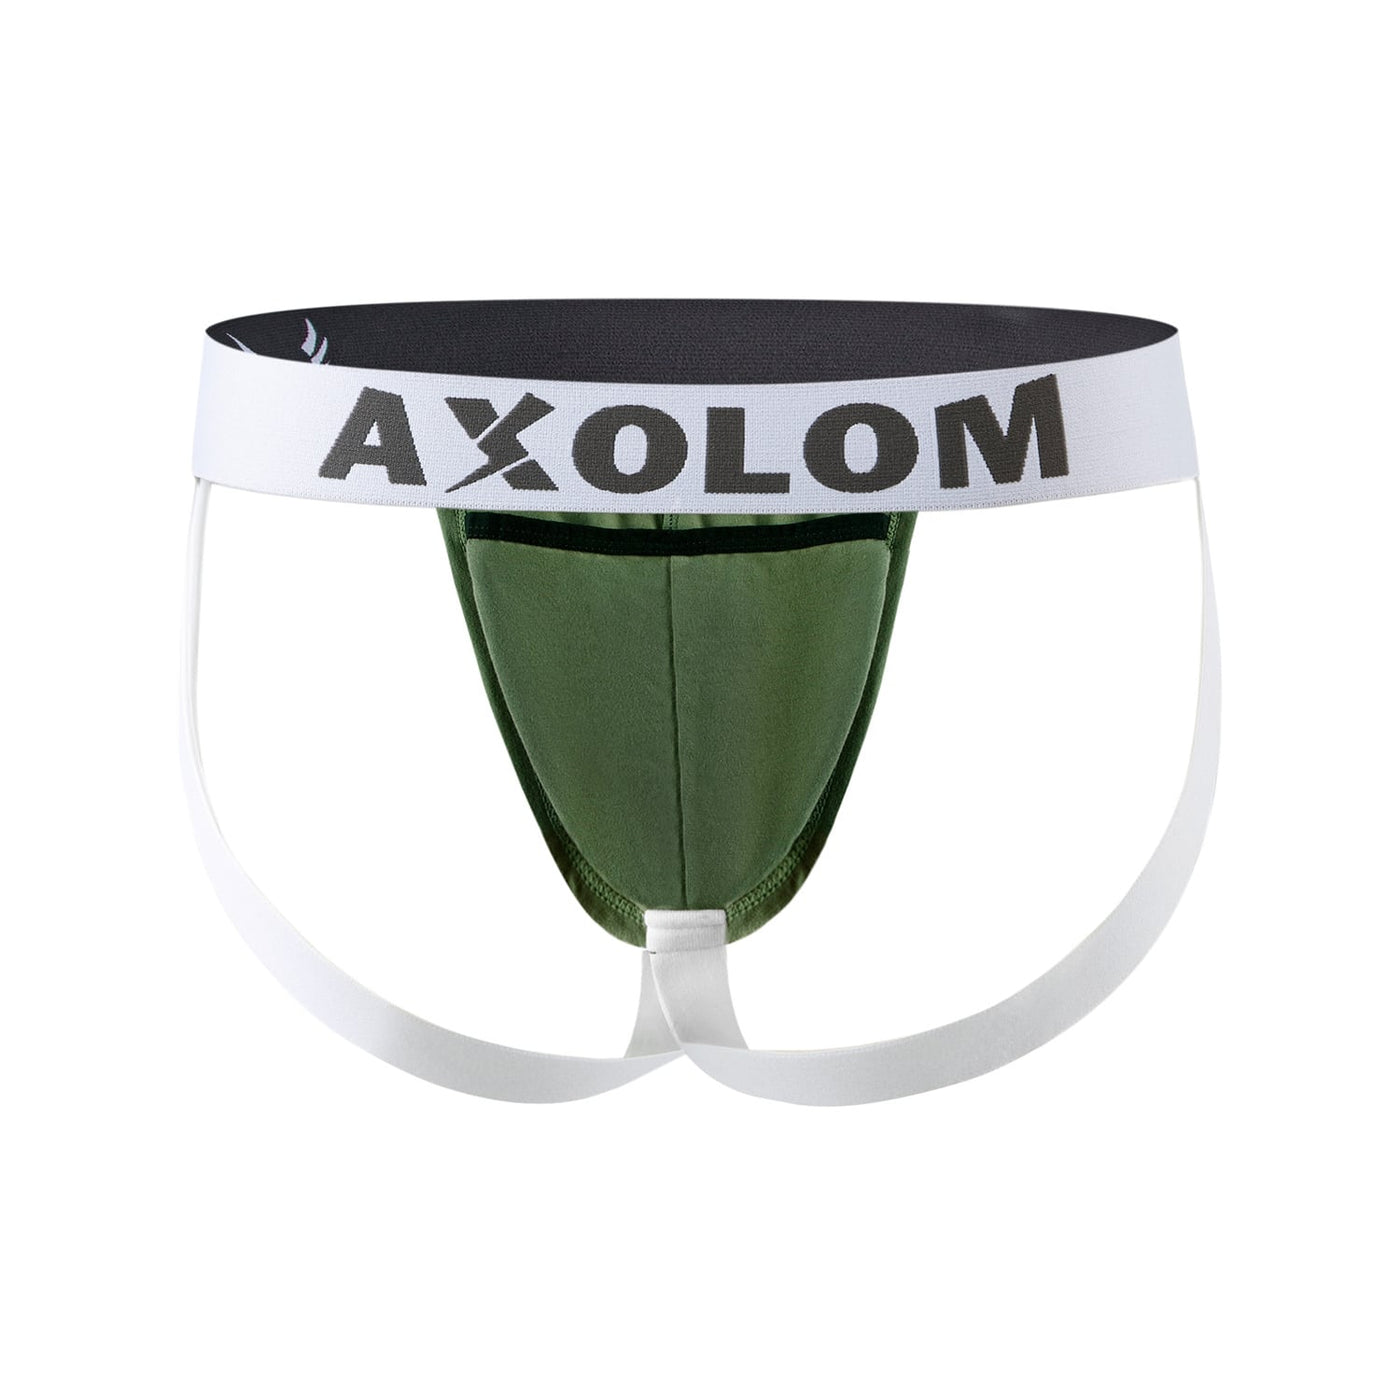 AXOLOM Packing Jockstrap - Axolom